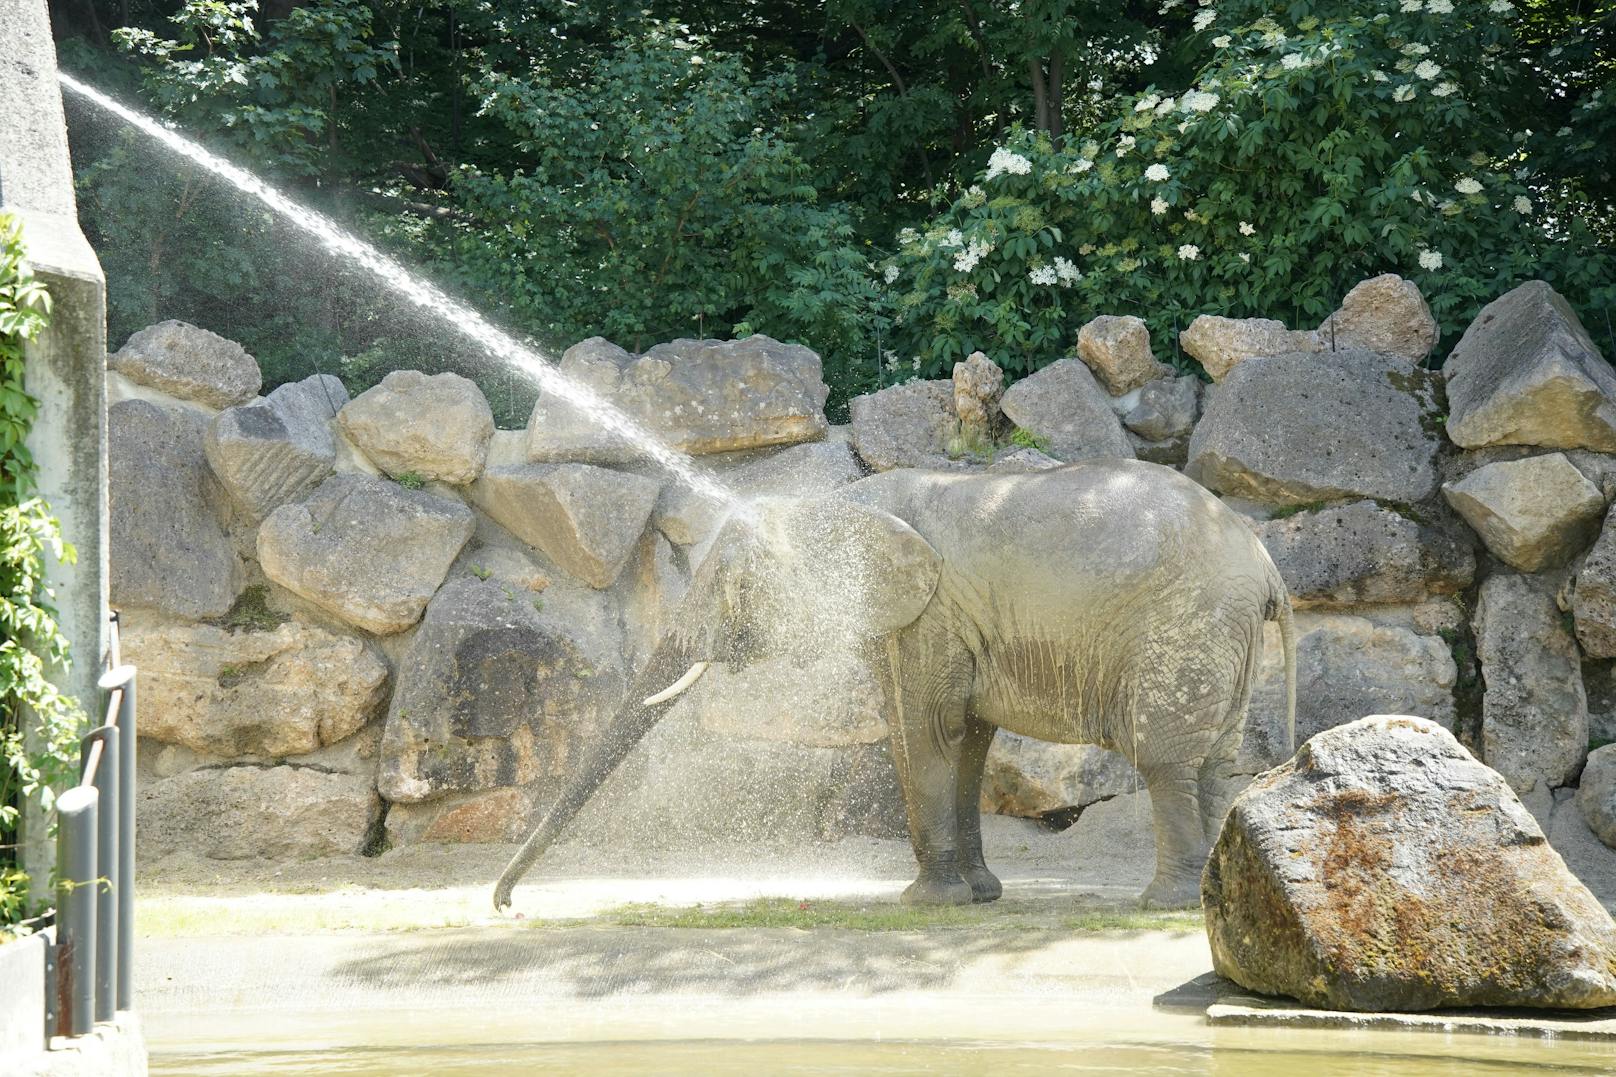 Abtauchen, Abhängen, Abduschen: So gehen die Tiere im Zoo Schönbrunn mit der Hitze um.